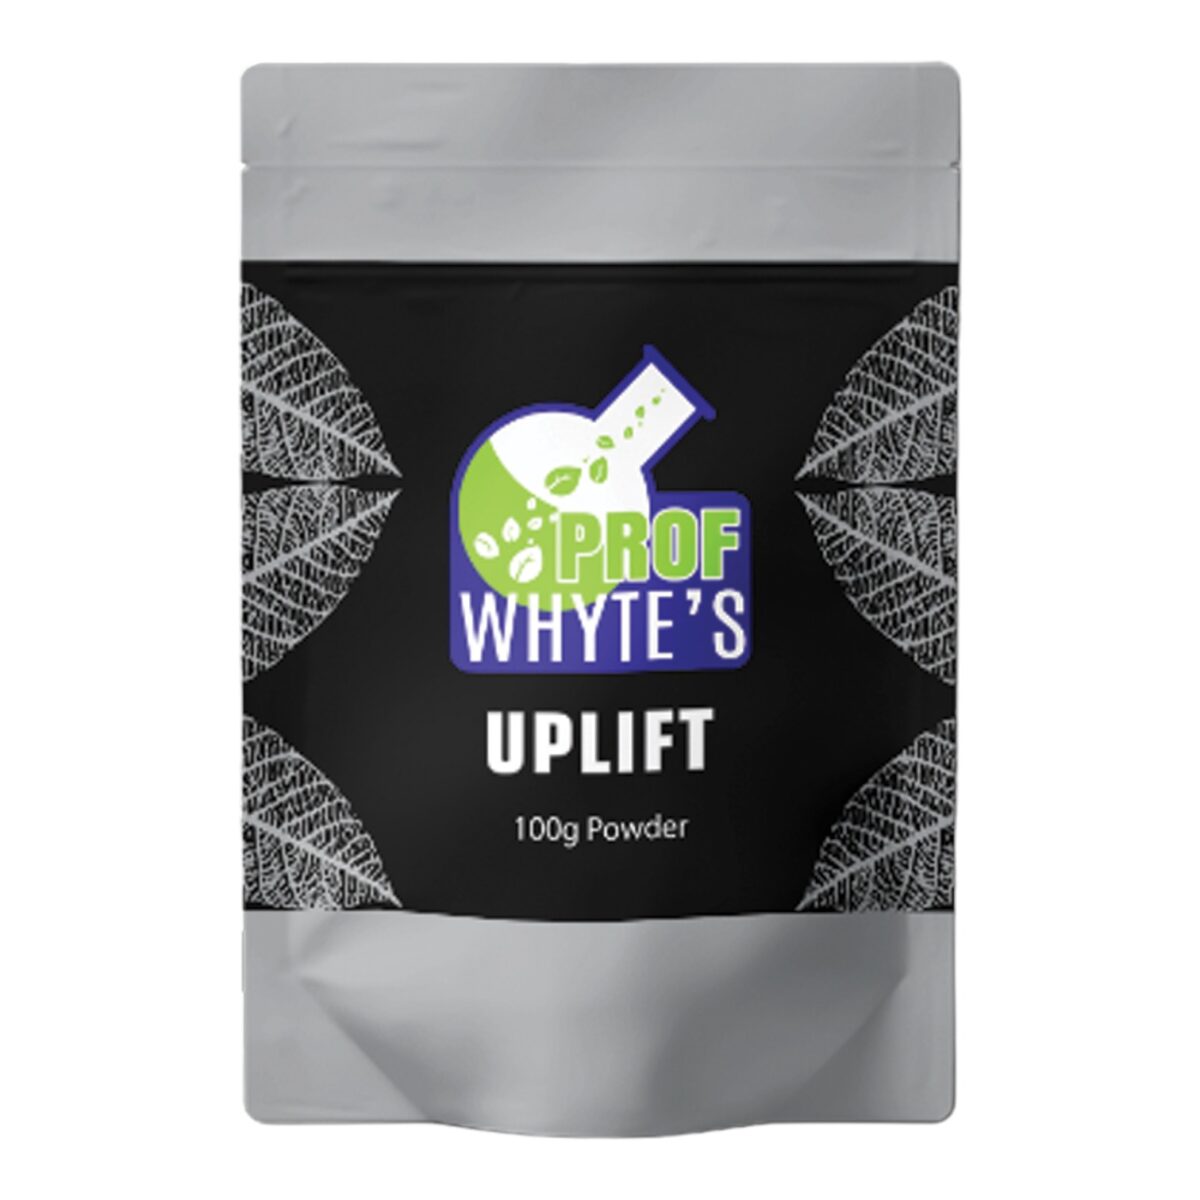 Prof Whyte’s Uplift Kratom Powder